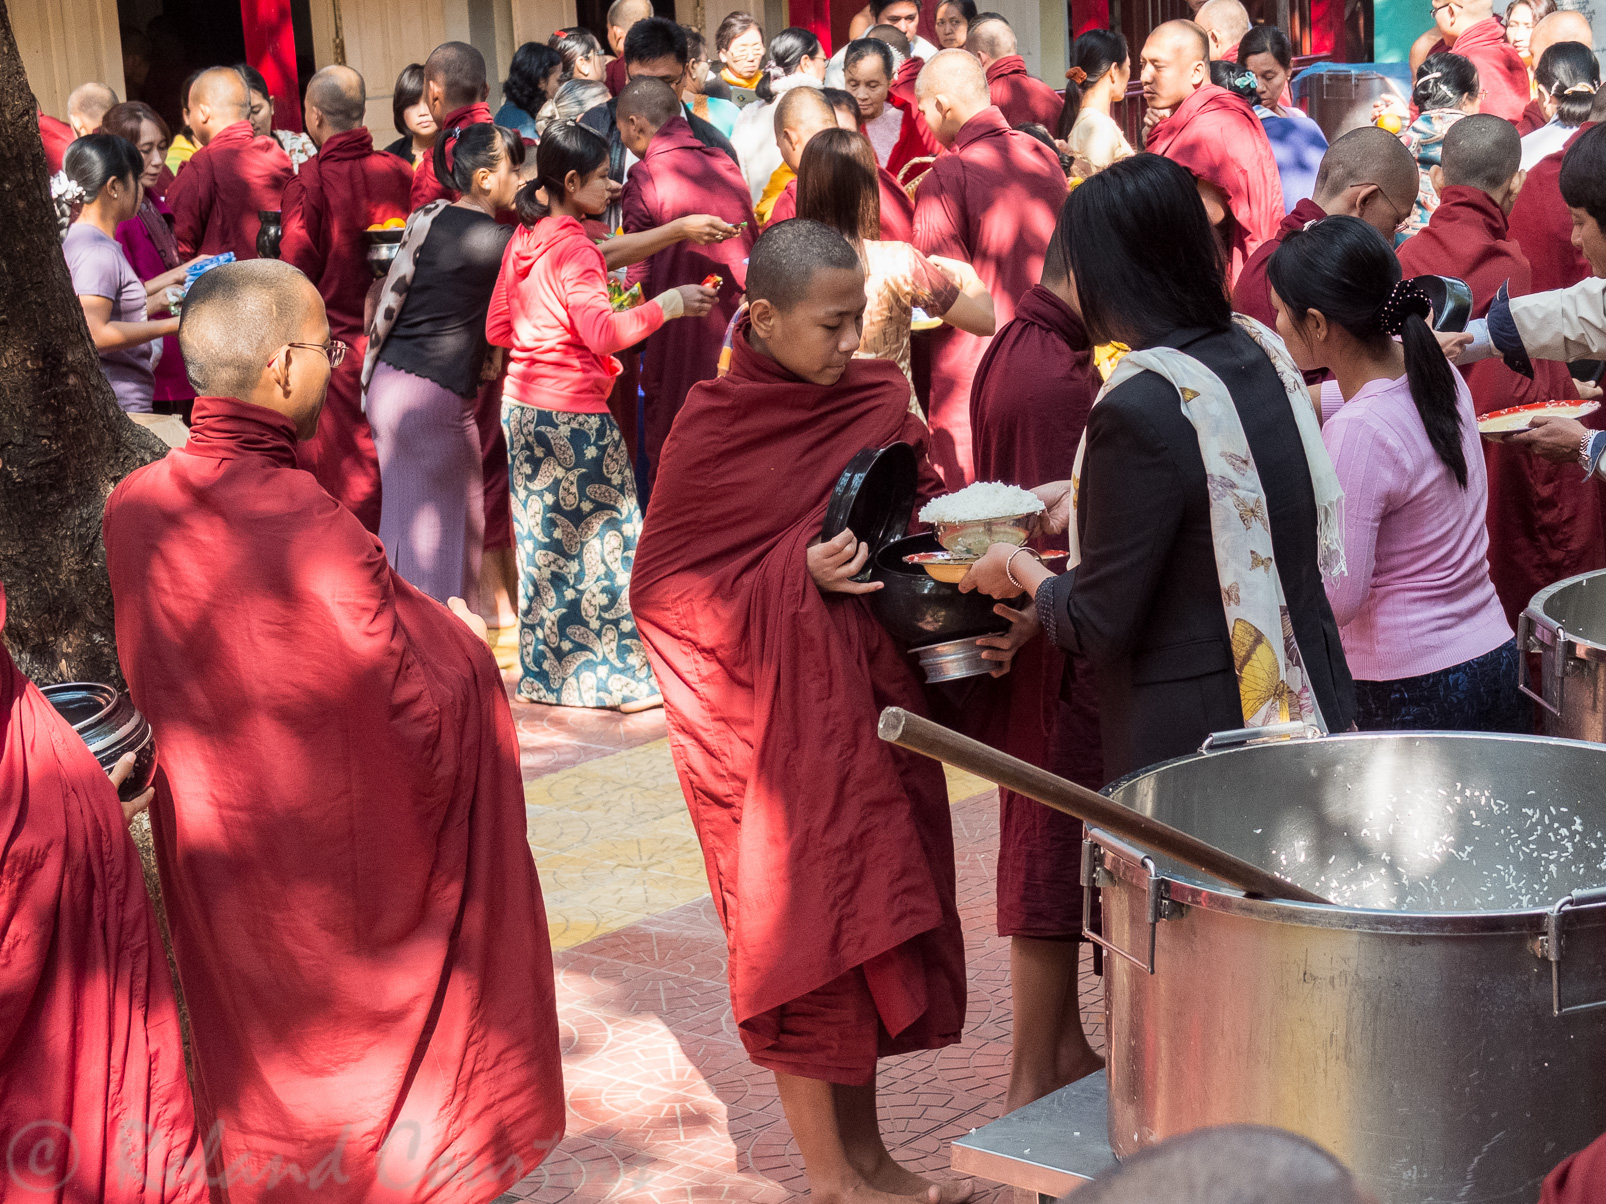 Le monastère Mahaganda-yon  date de 1950. Pendant le jeûne bouddhique environ 1000 moines se rendent en silence vers le réfectoire….